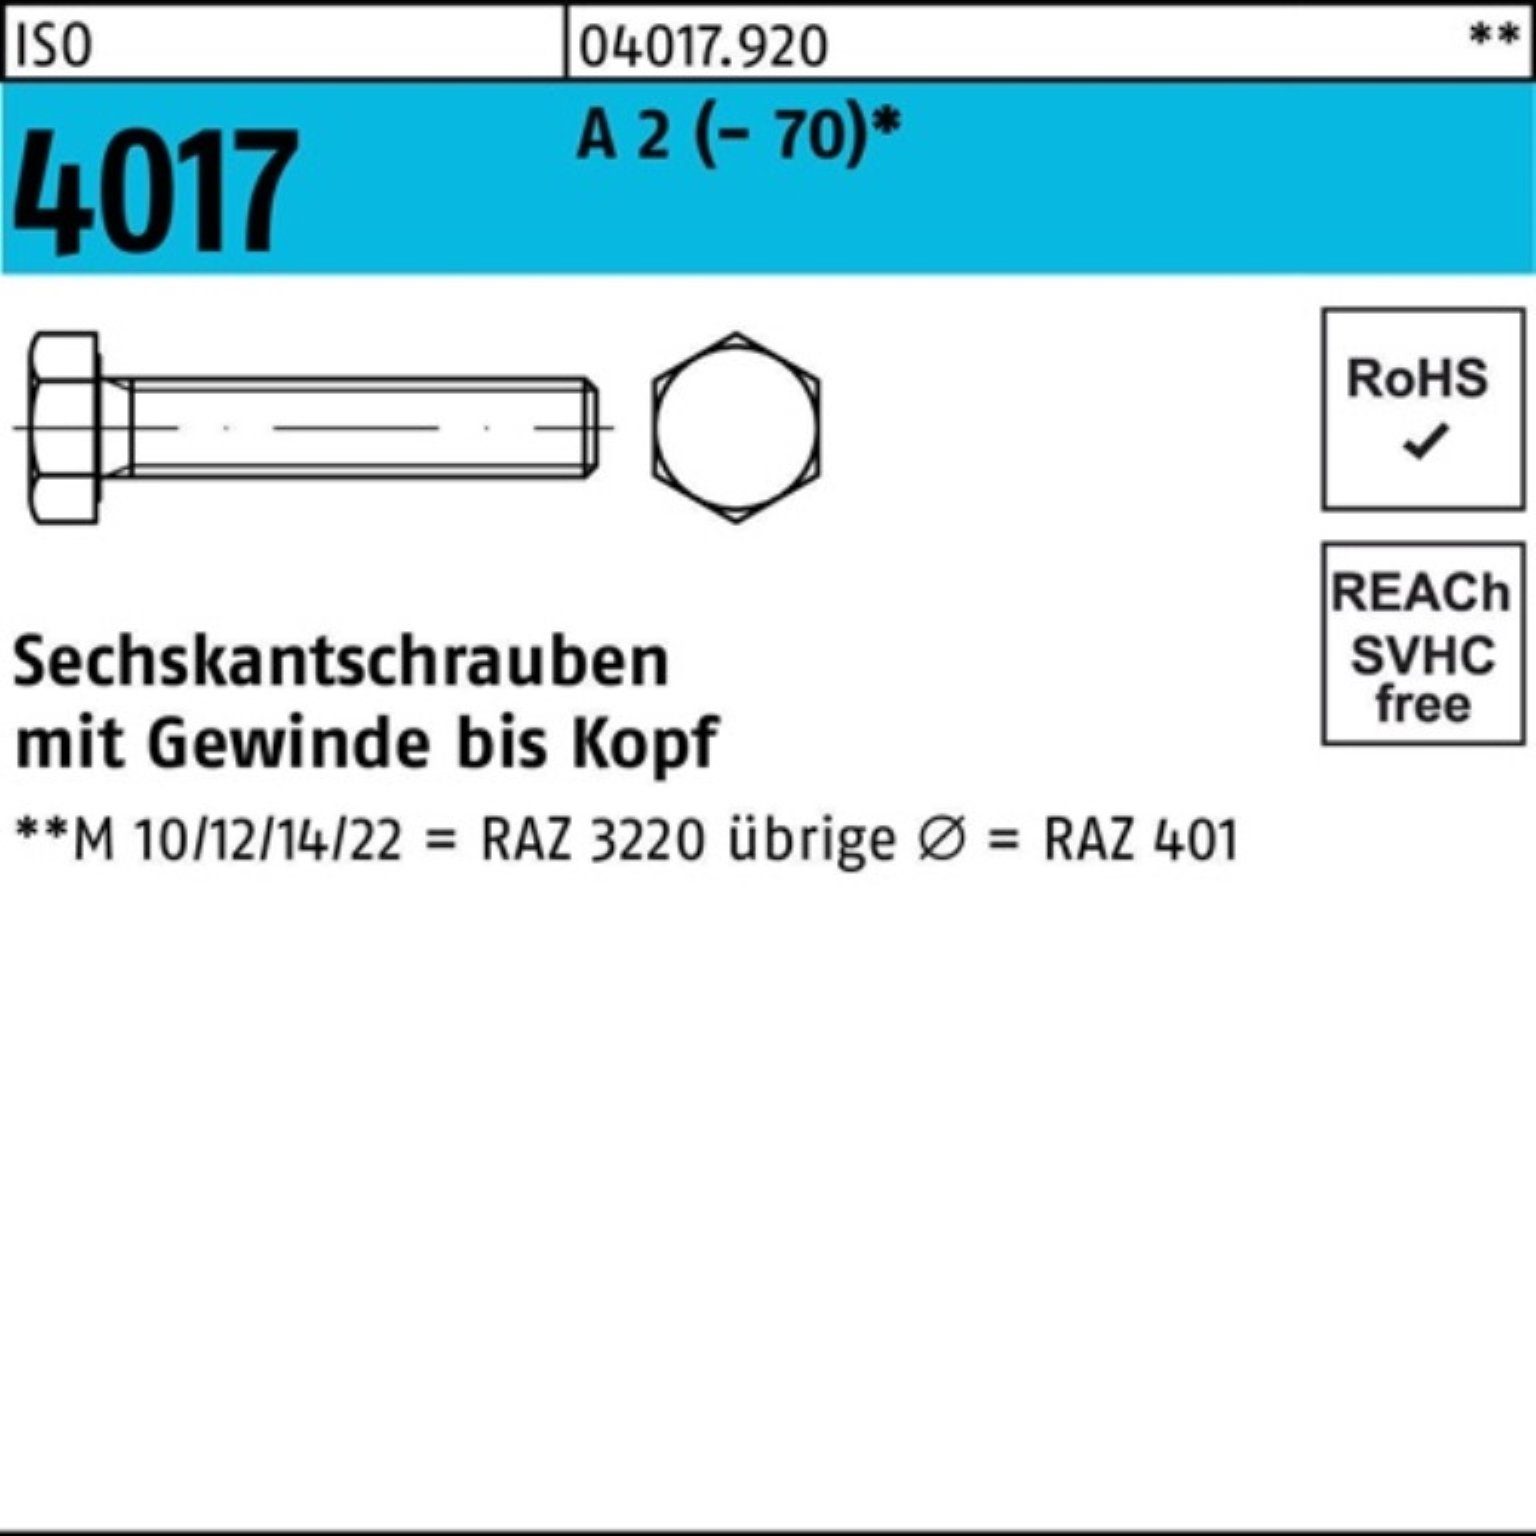 (70) M18x 35 2 Sechskantschraube 25 100er ISO Stück Bufab VG A 4017 Sechskantschraube Pack